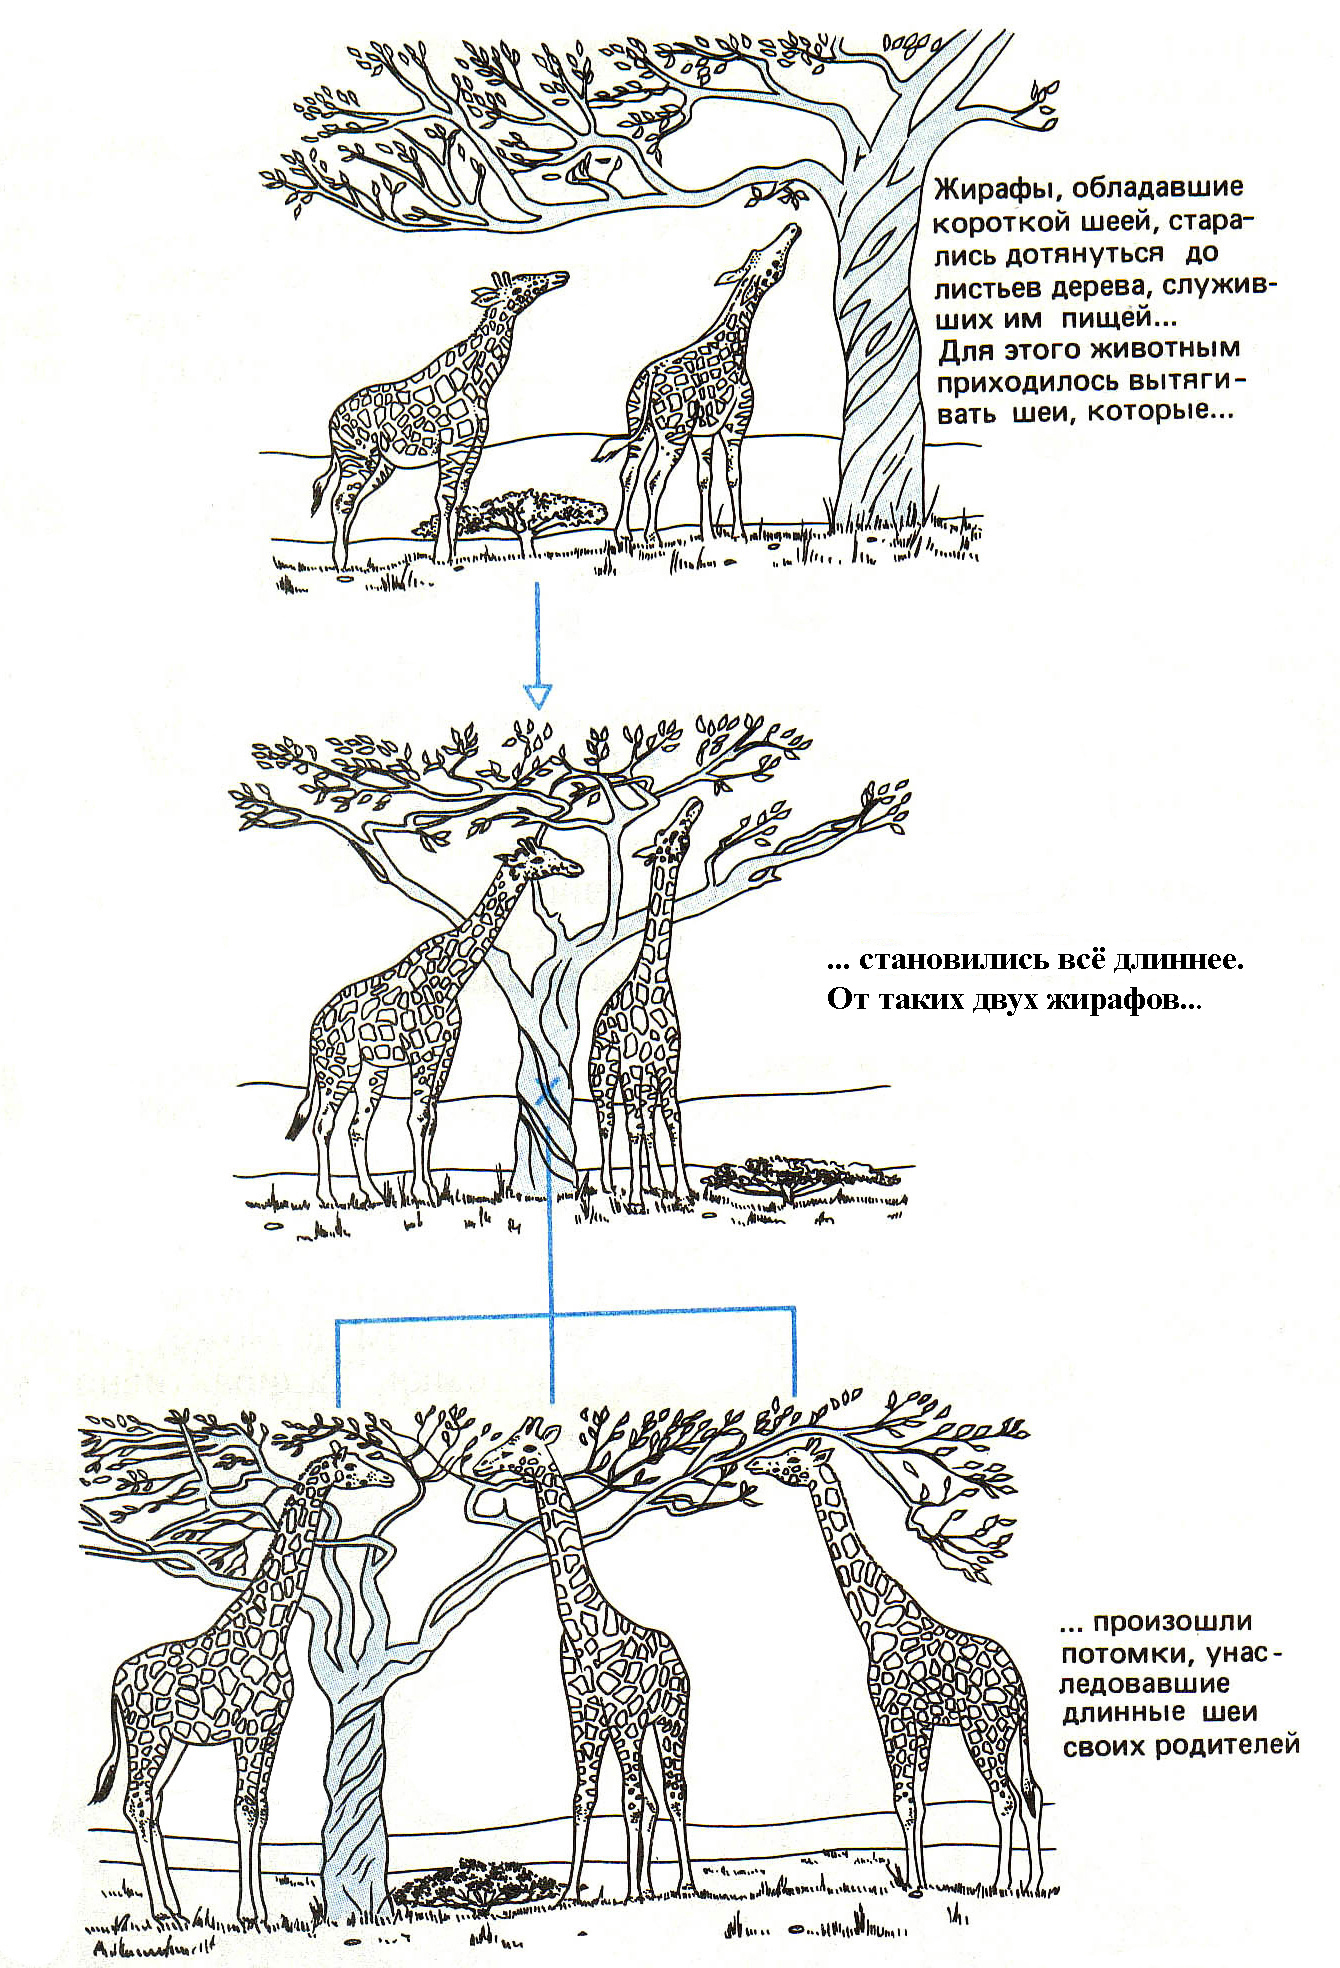 Что по ламарку является причиной появления длинной. Эволюционная теория Ламарка Жираф. Ламарк теория Жираф. Эволюция жирафа Ламарк. Эволюция длинной шеи у Жирафов с ламаркистской точки зрения.